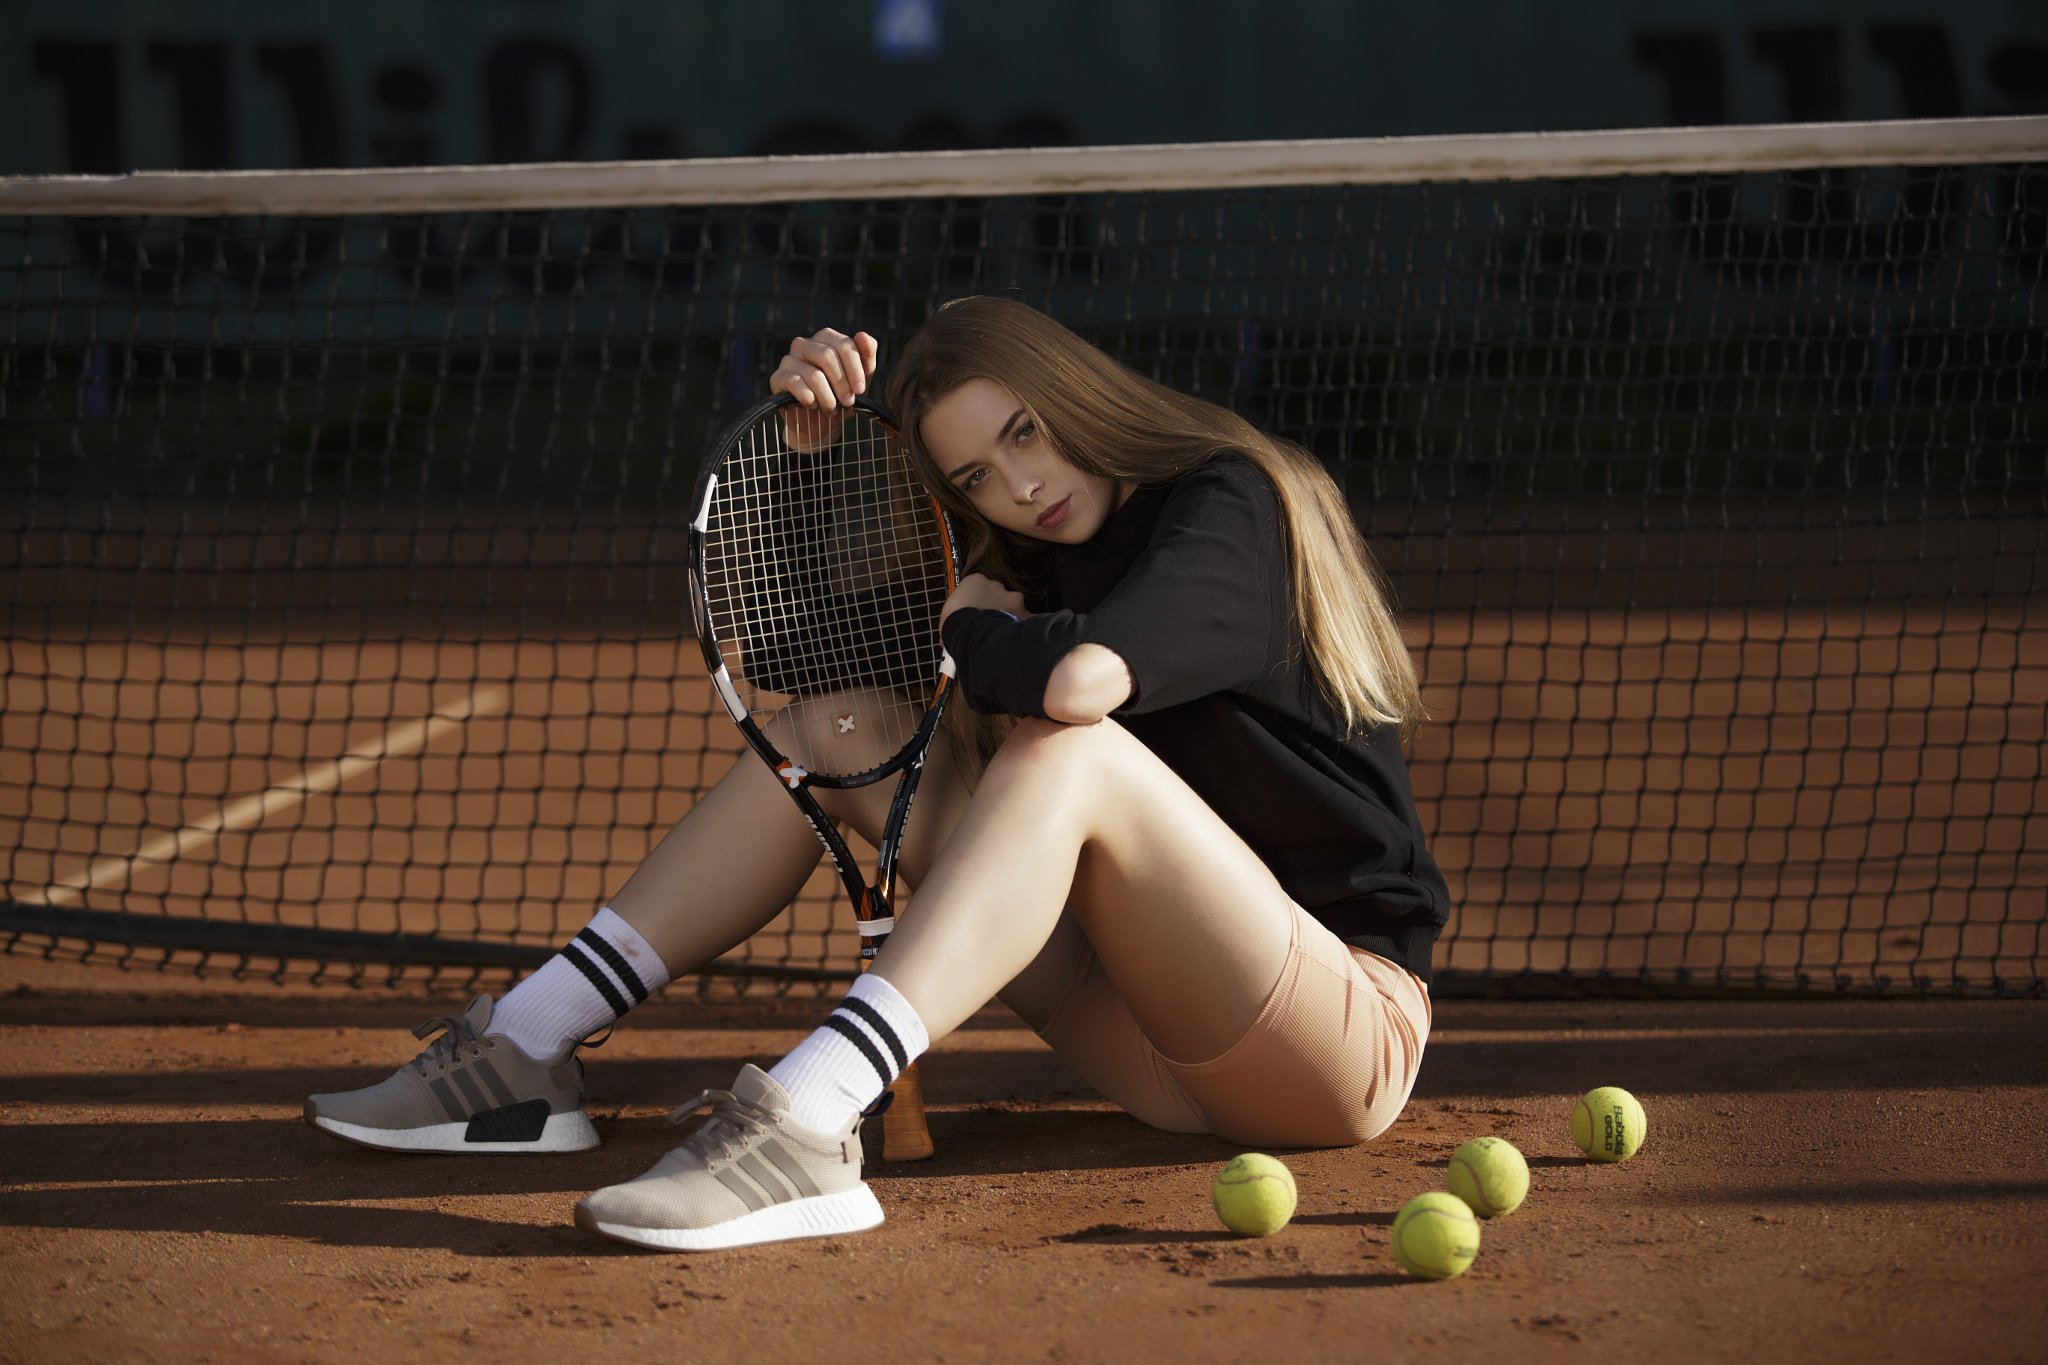 Further girls. Теннис девушки. Девушки теннисистки. Девушка на теннисном корте. Большой теннис девушки.